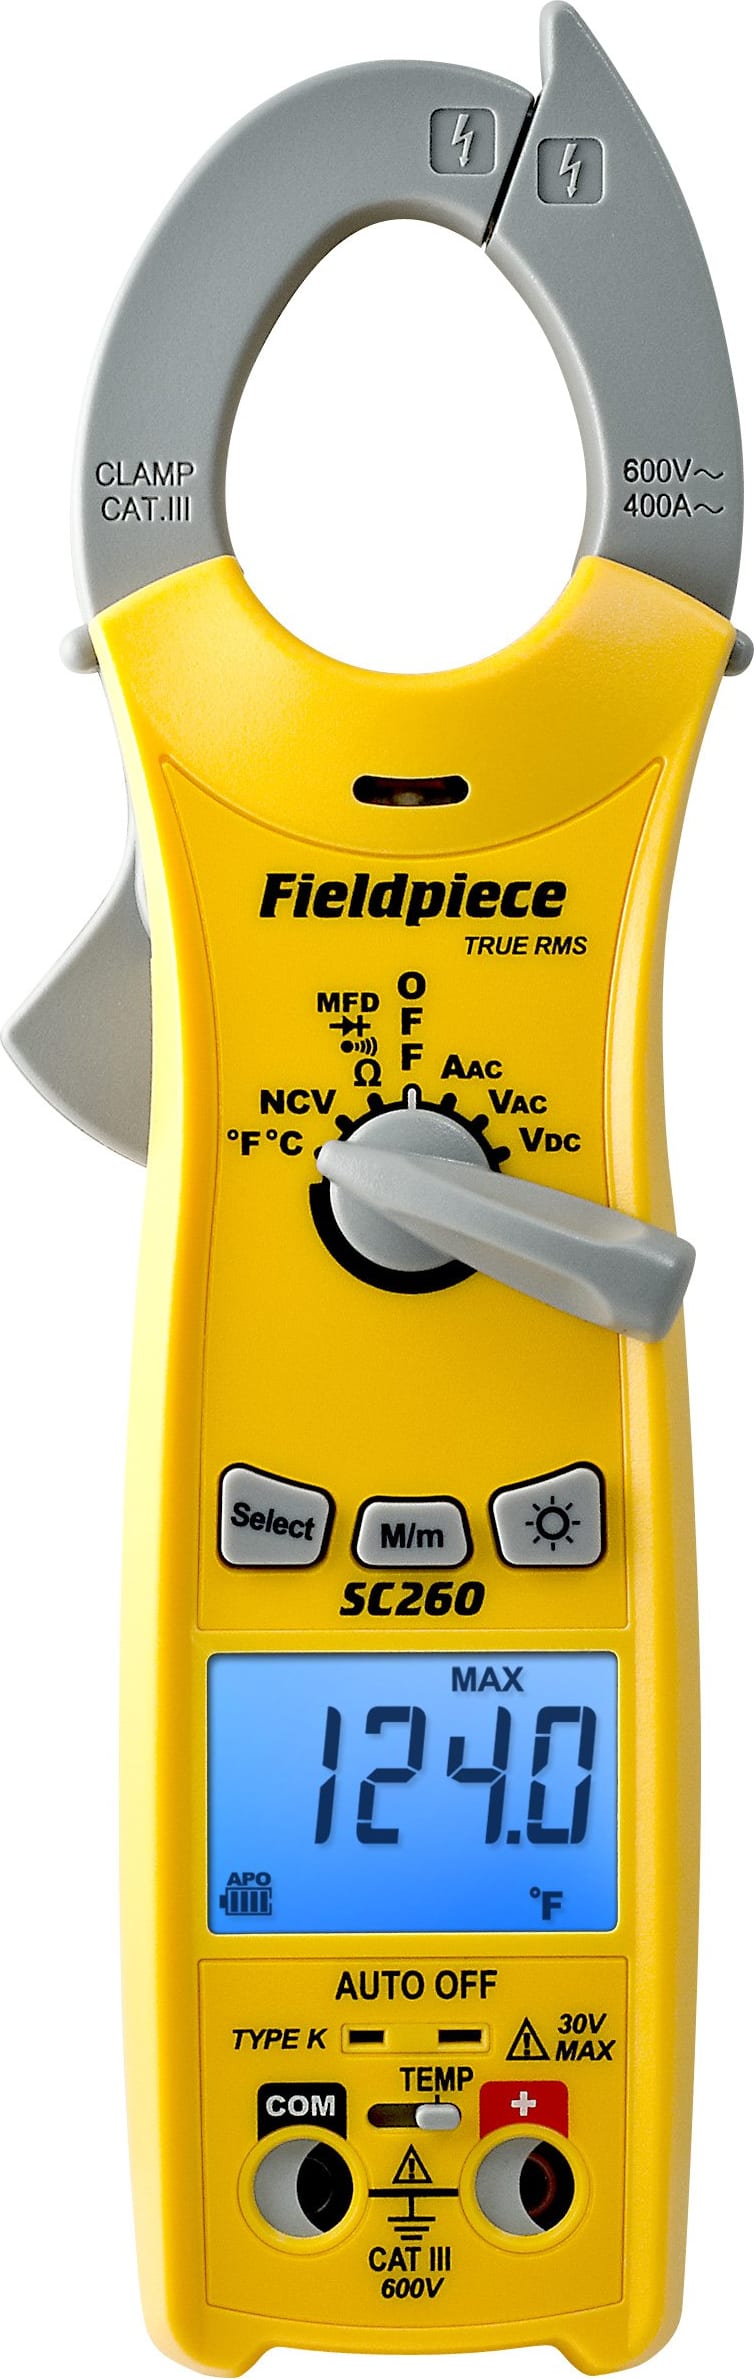 SC260 - Pinza amperimétrica compacta con indicación de valor medio  cuadrático (RMS) verdadero (valor eficaz verdadero) - Fieldpiece Instruments